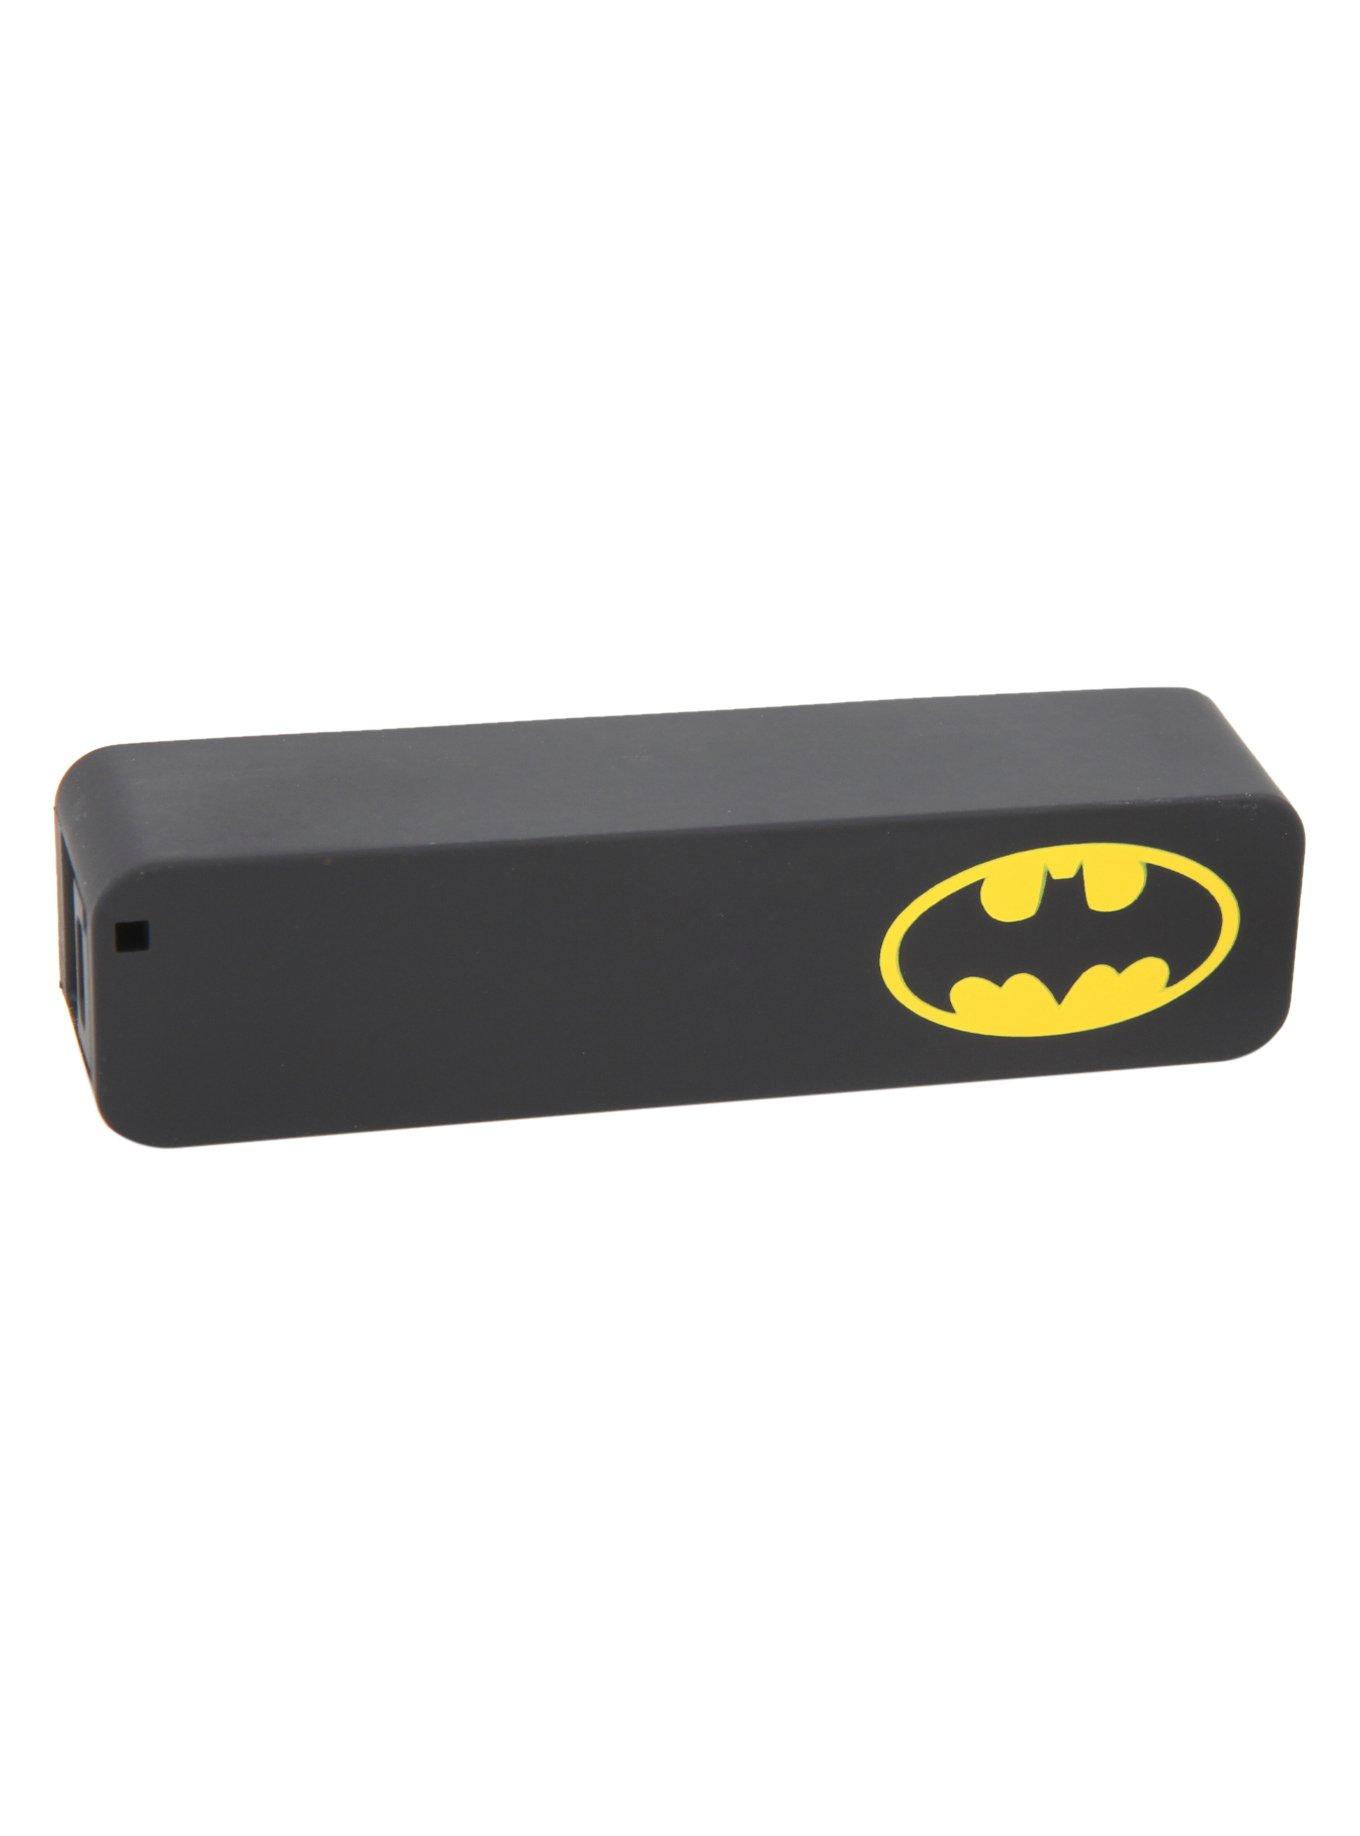 DC Comics Batman USB Power Bank | Hot Topic